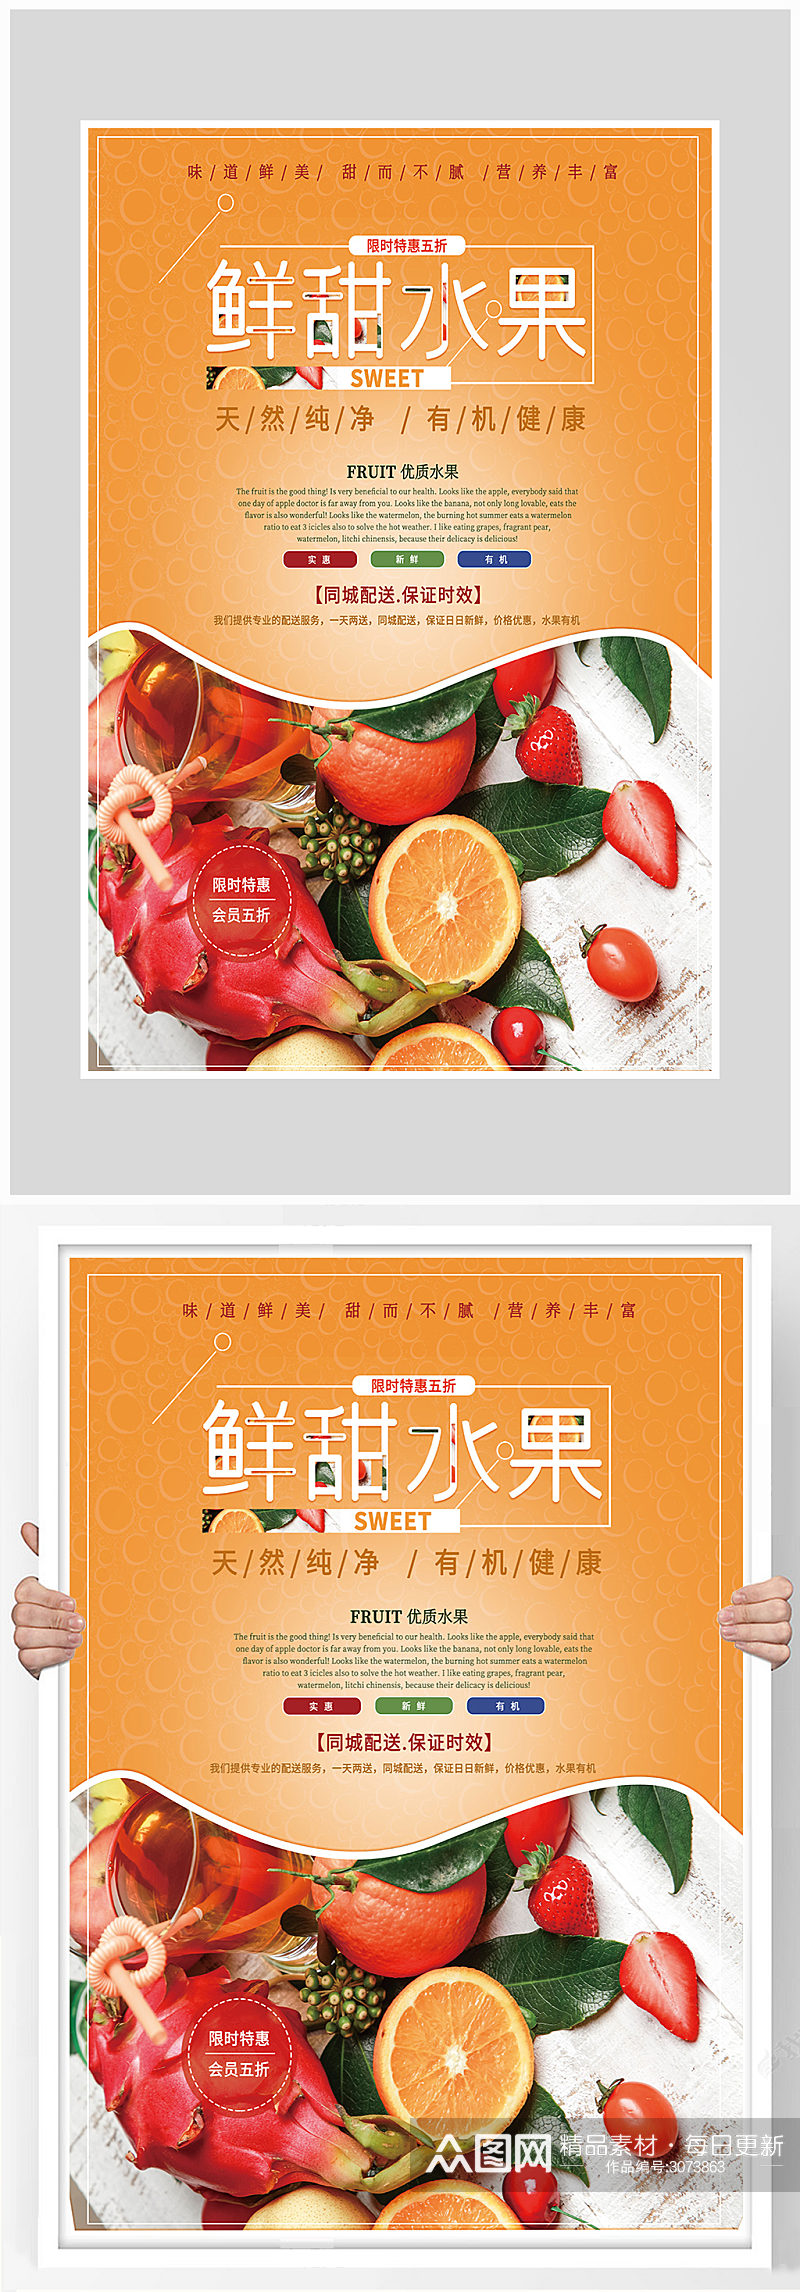 创意简约新鲜水果海报设计素材